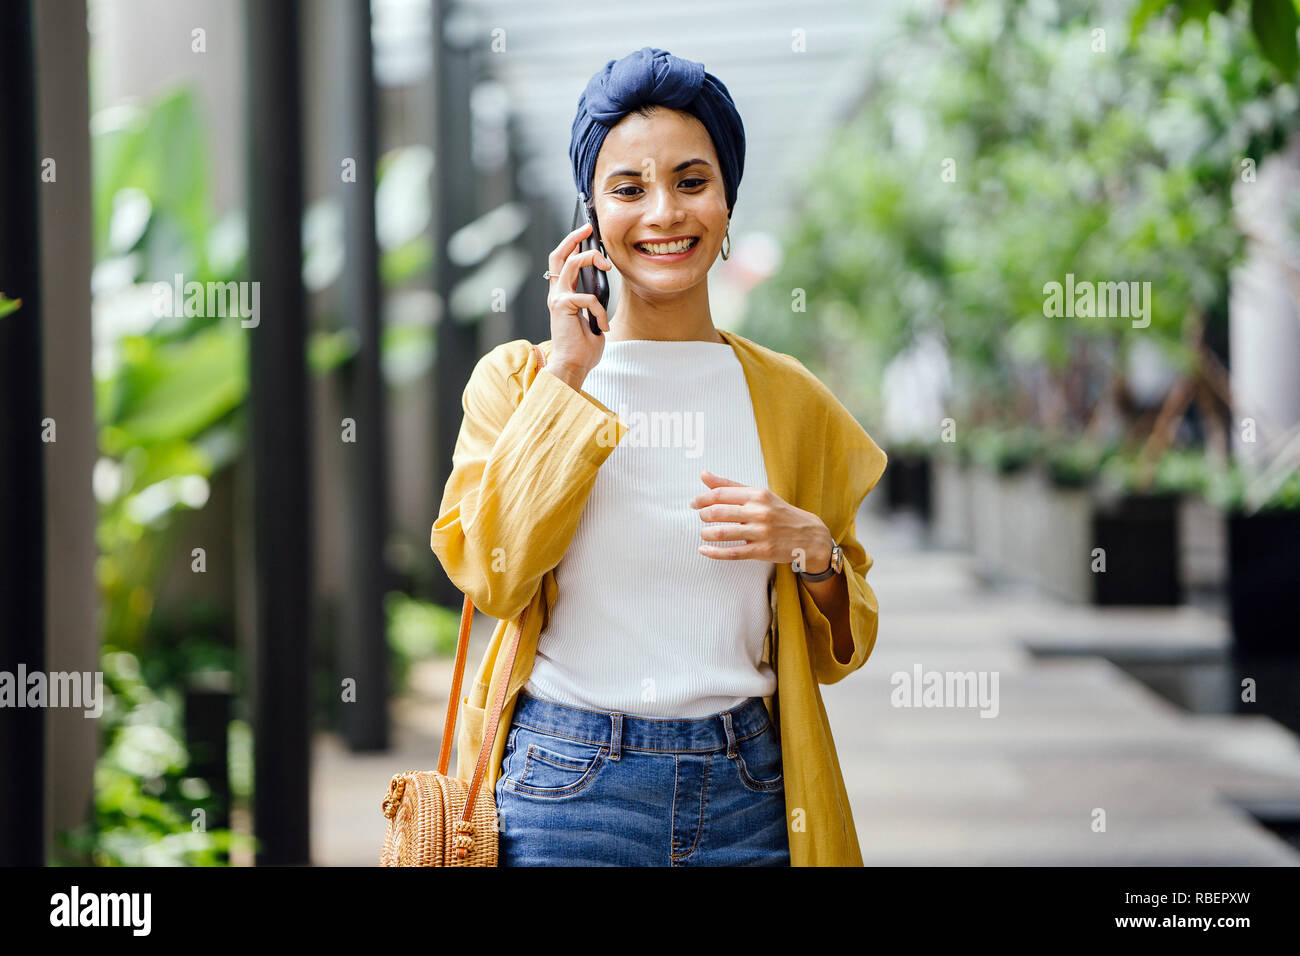 Eine junge und schöne Orientalische Frau in einem turban Hijab ist Lächeln, wie Sie auf Ihrem Smartphone die Gespräche auf der Straße während des Tages. Stockfoto